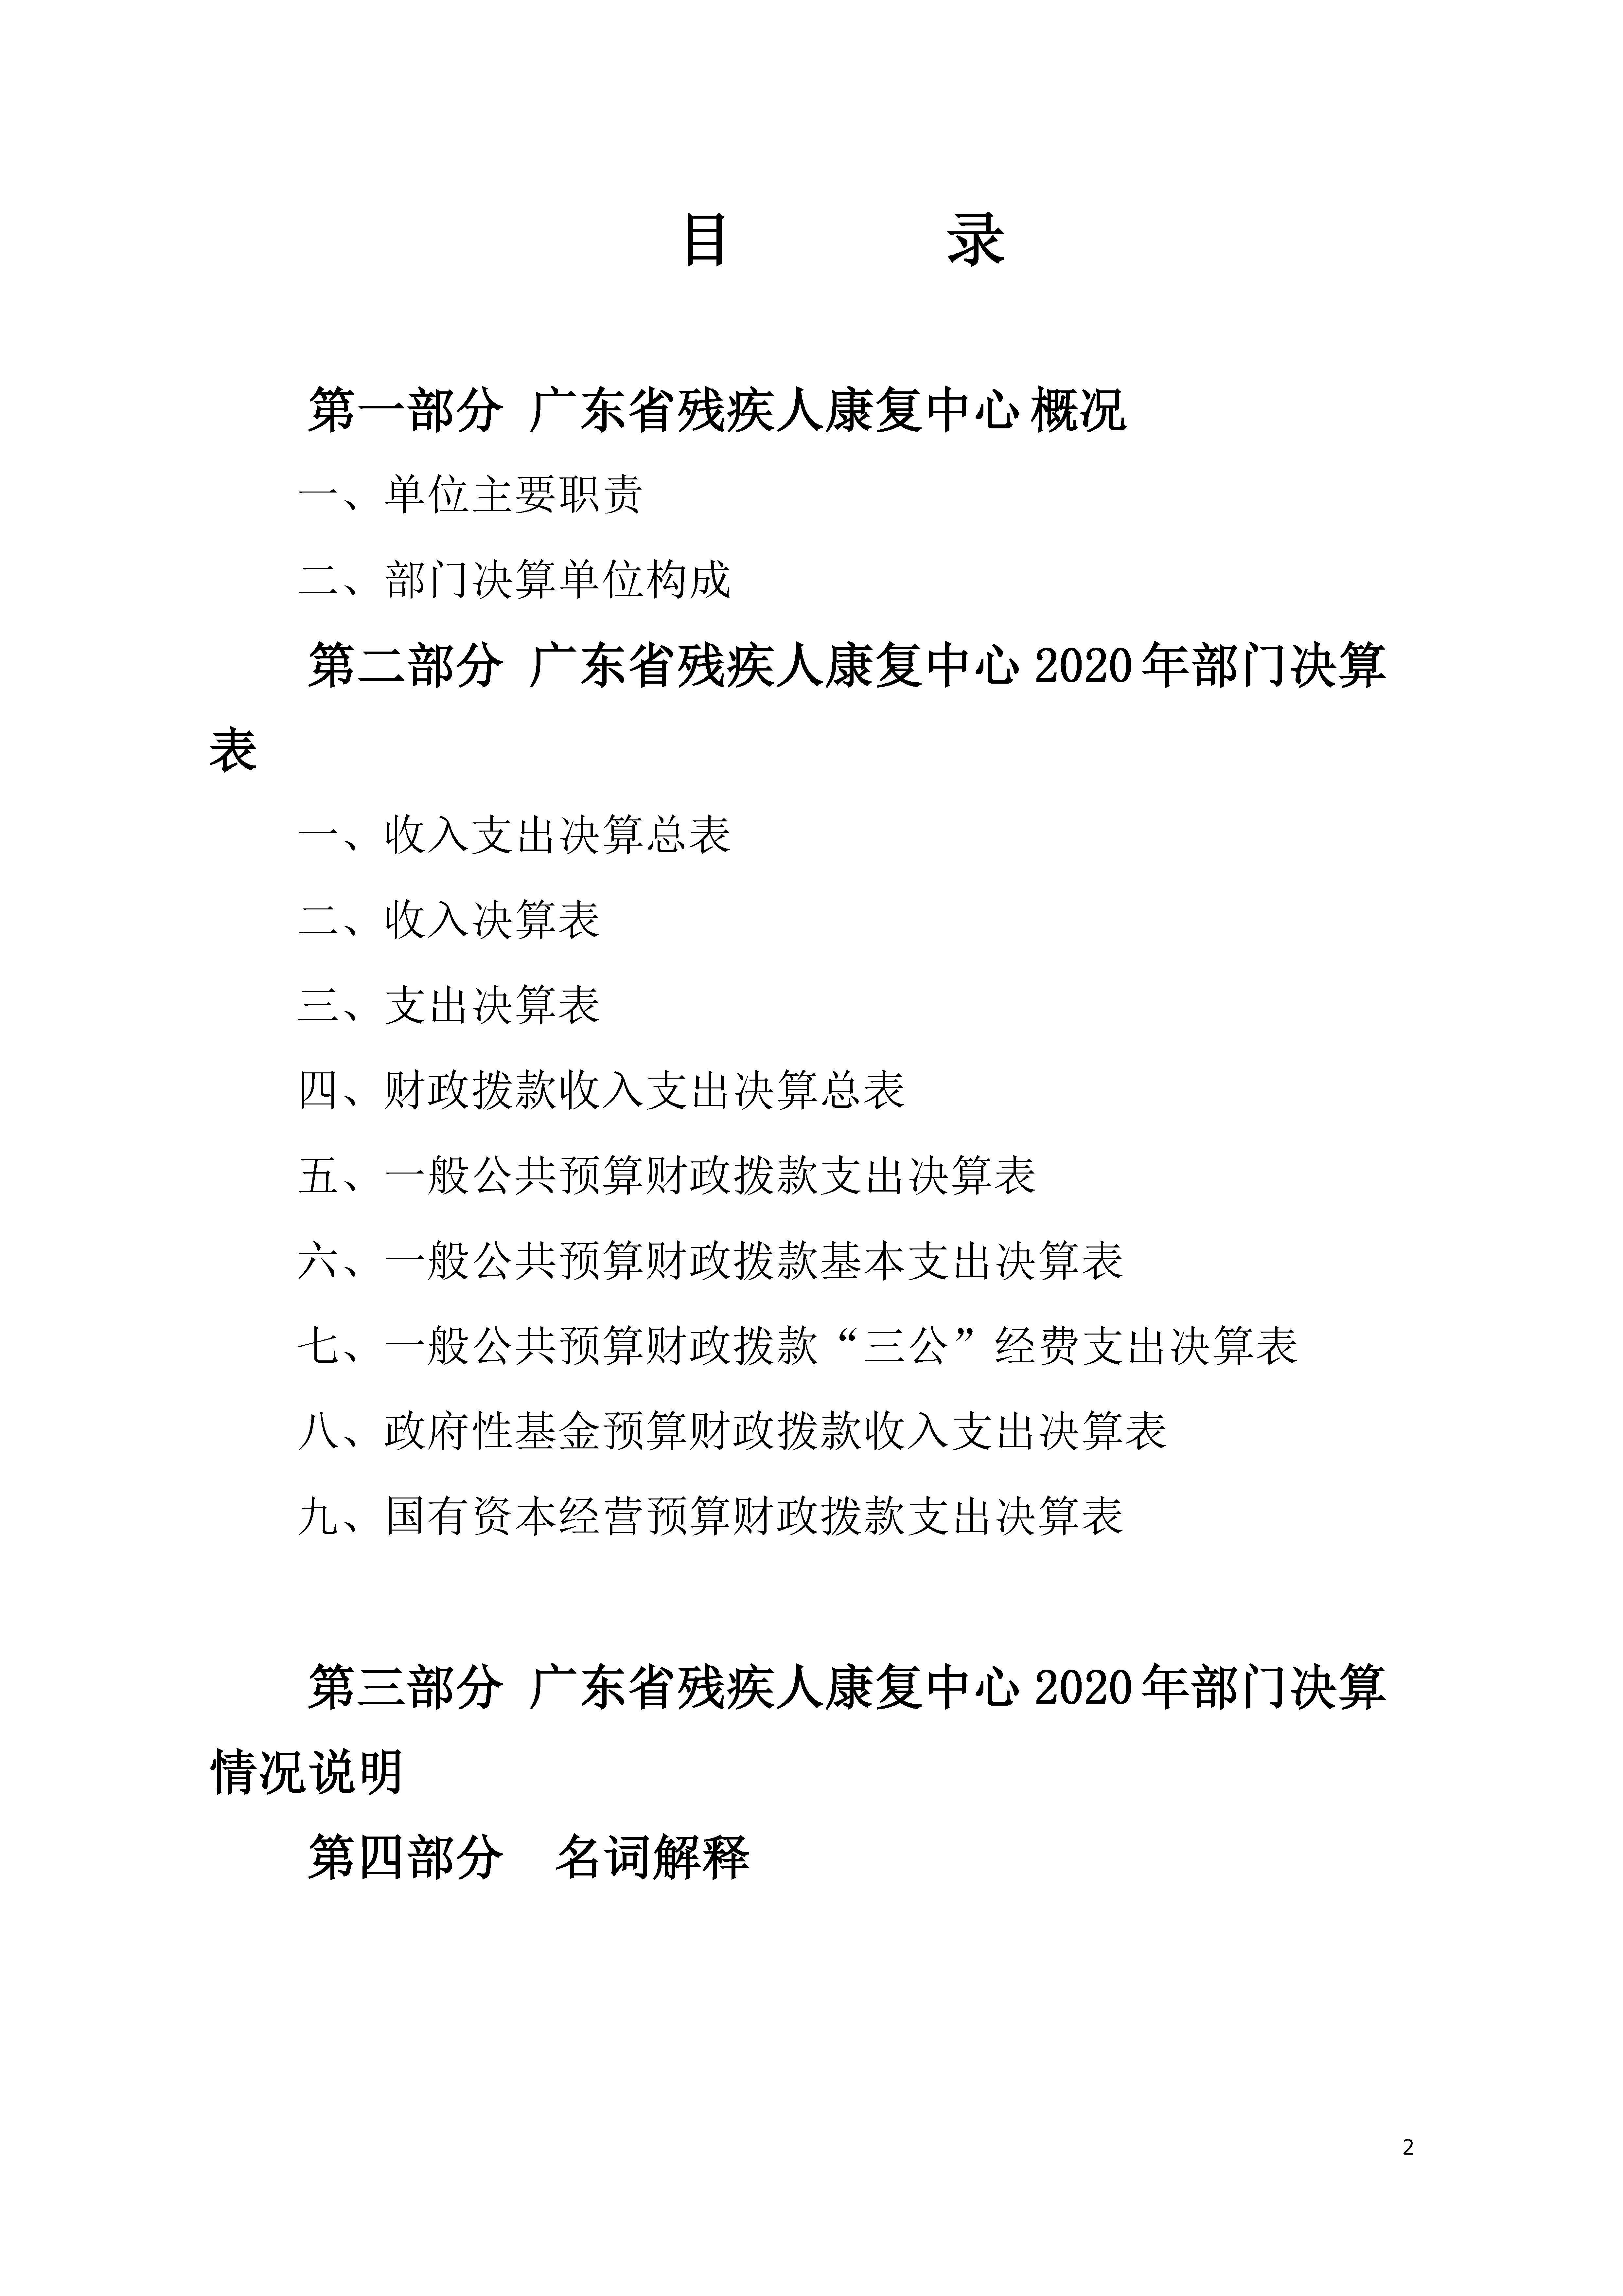 2020年广东省残疾人康复中心部门决算_页面_02.jpg